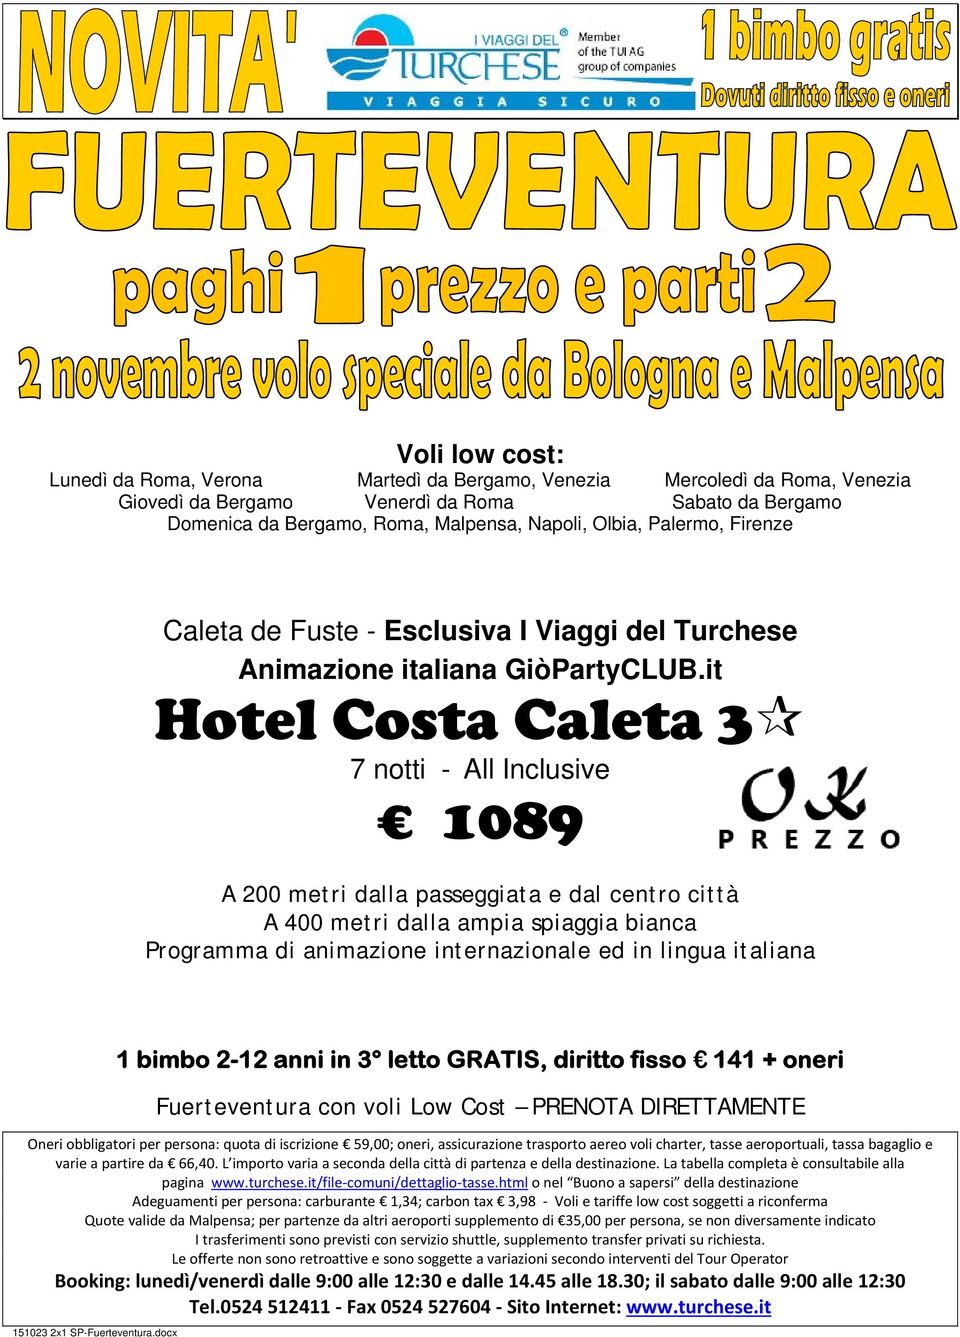 it Hotel Costa Caleta 3 7 notti - 1089 A 200 metri dalla passeggiata e dal centro città A 400 metri dalla ampia spiaggia bianca Programma di animazione internazionale ed in lingua italiana 1 bimbo